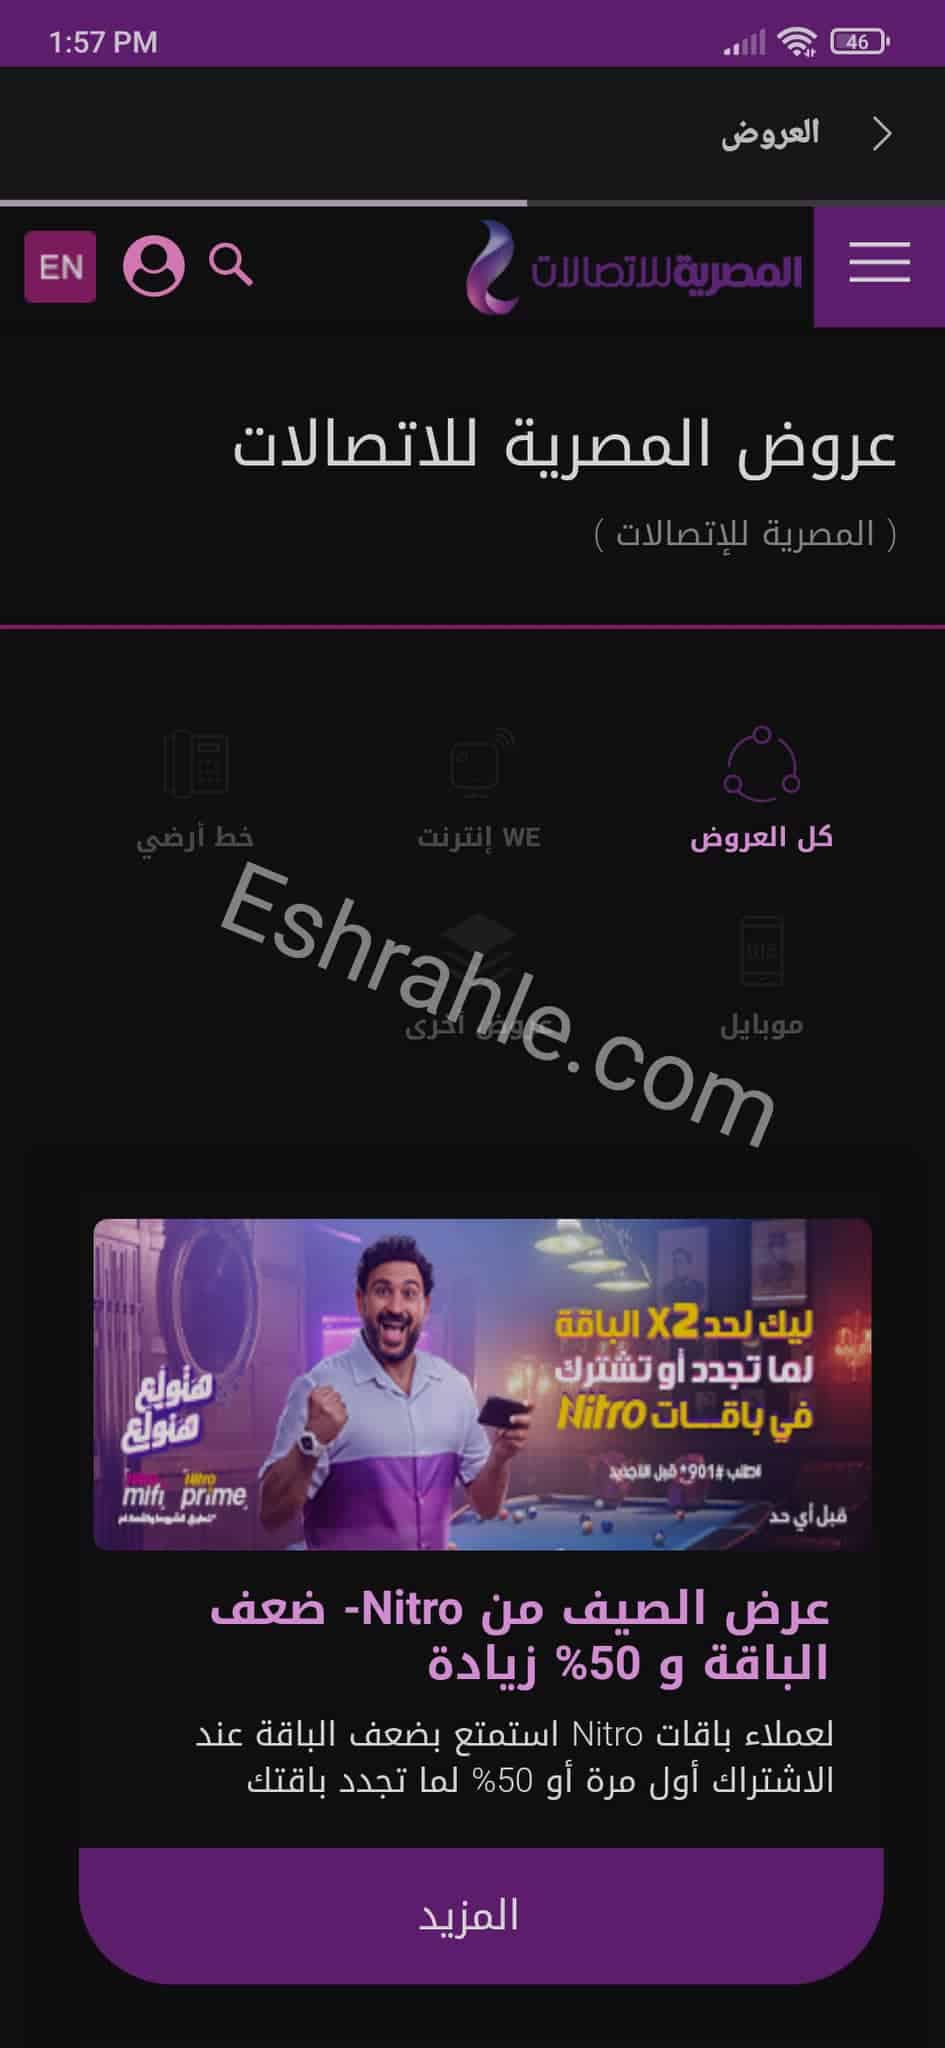 تحميل تطبيق ماي وي my we لادارة خطك - الانترنت الارضي 5